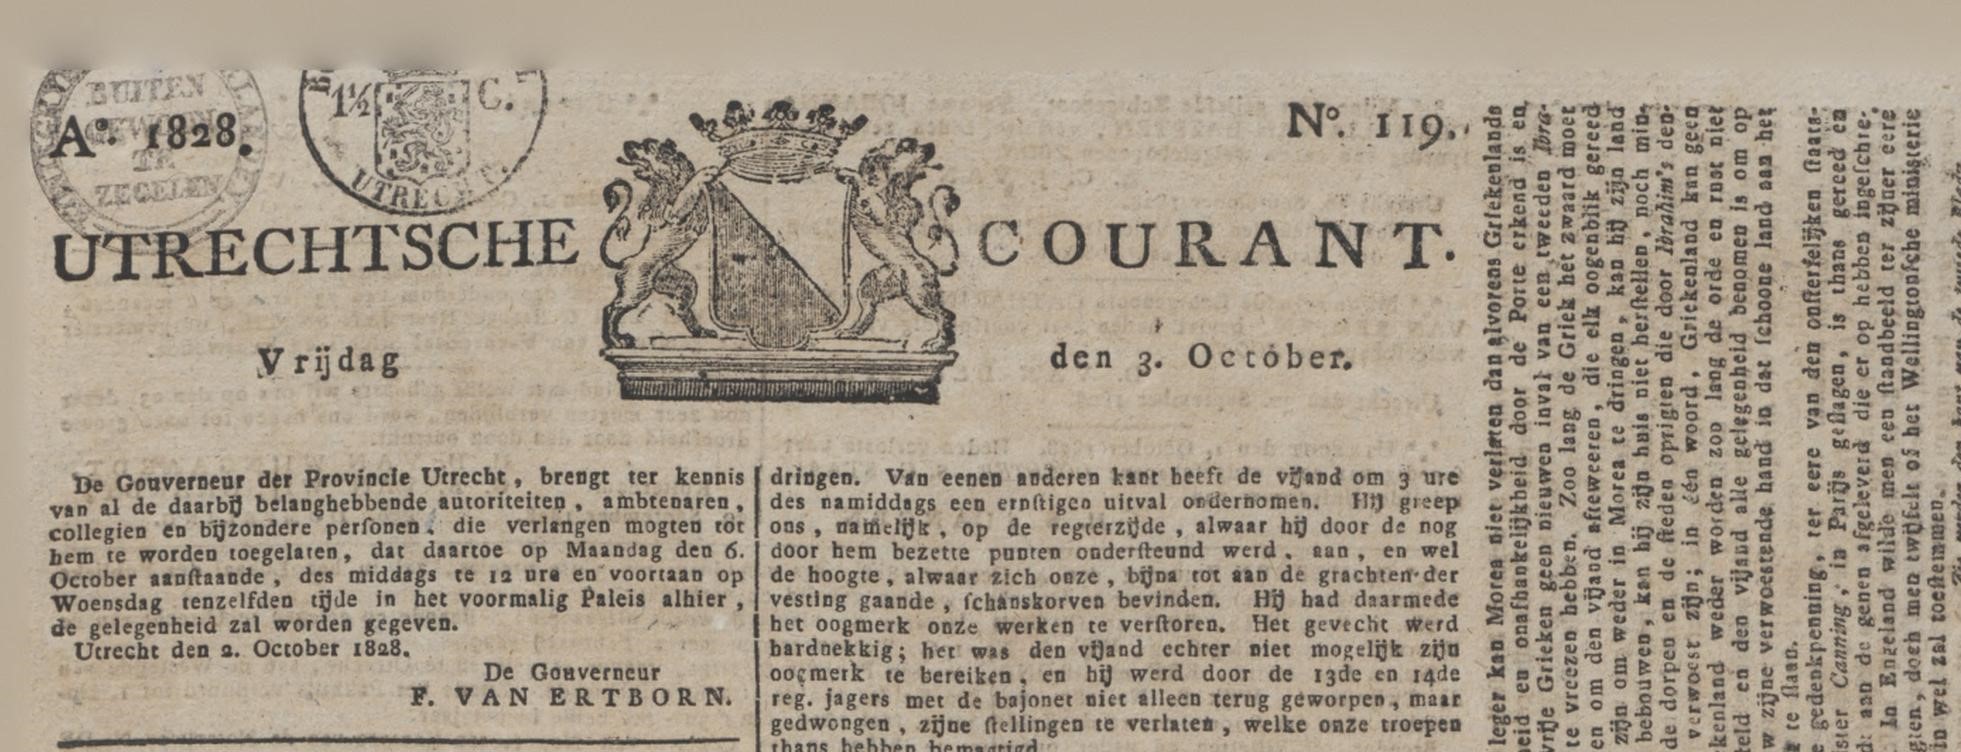 Utrechtse Courant 1828